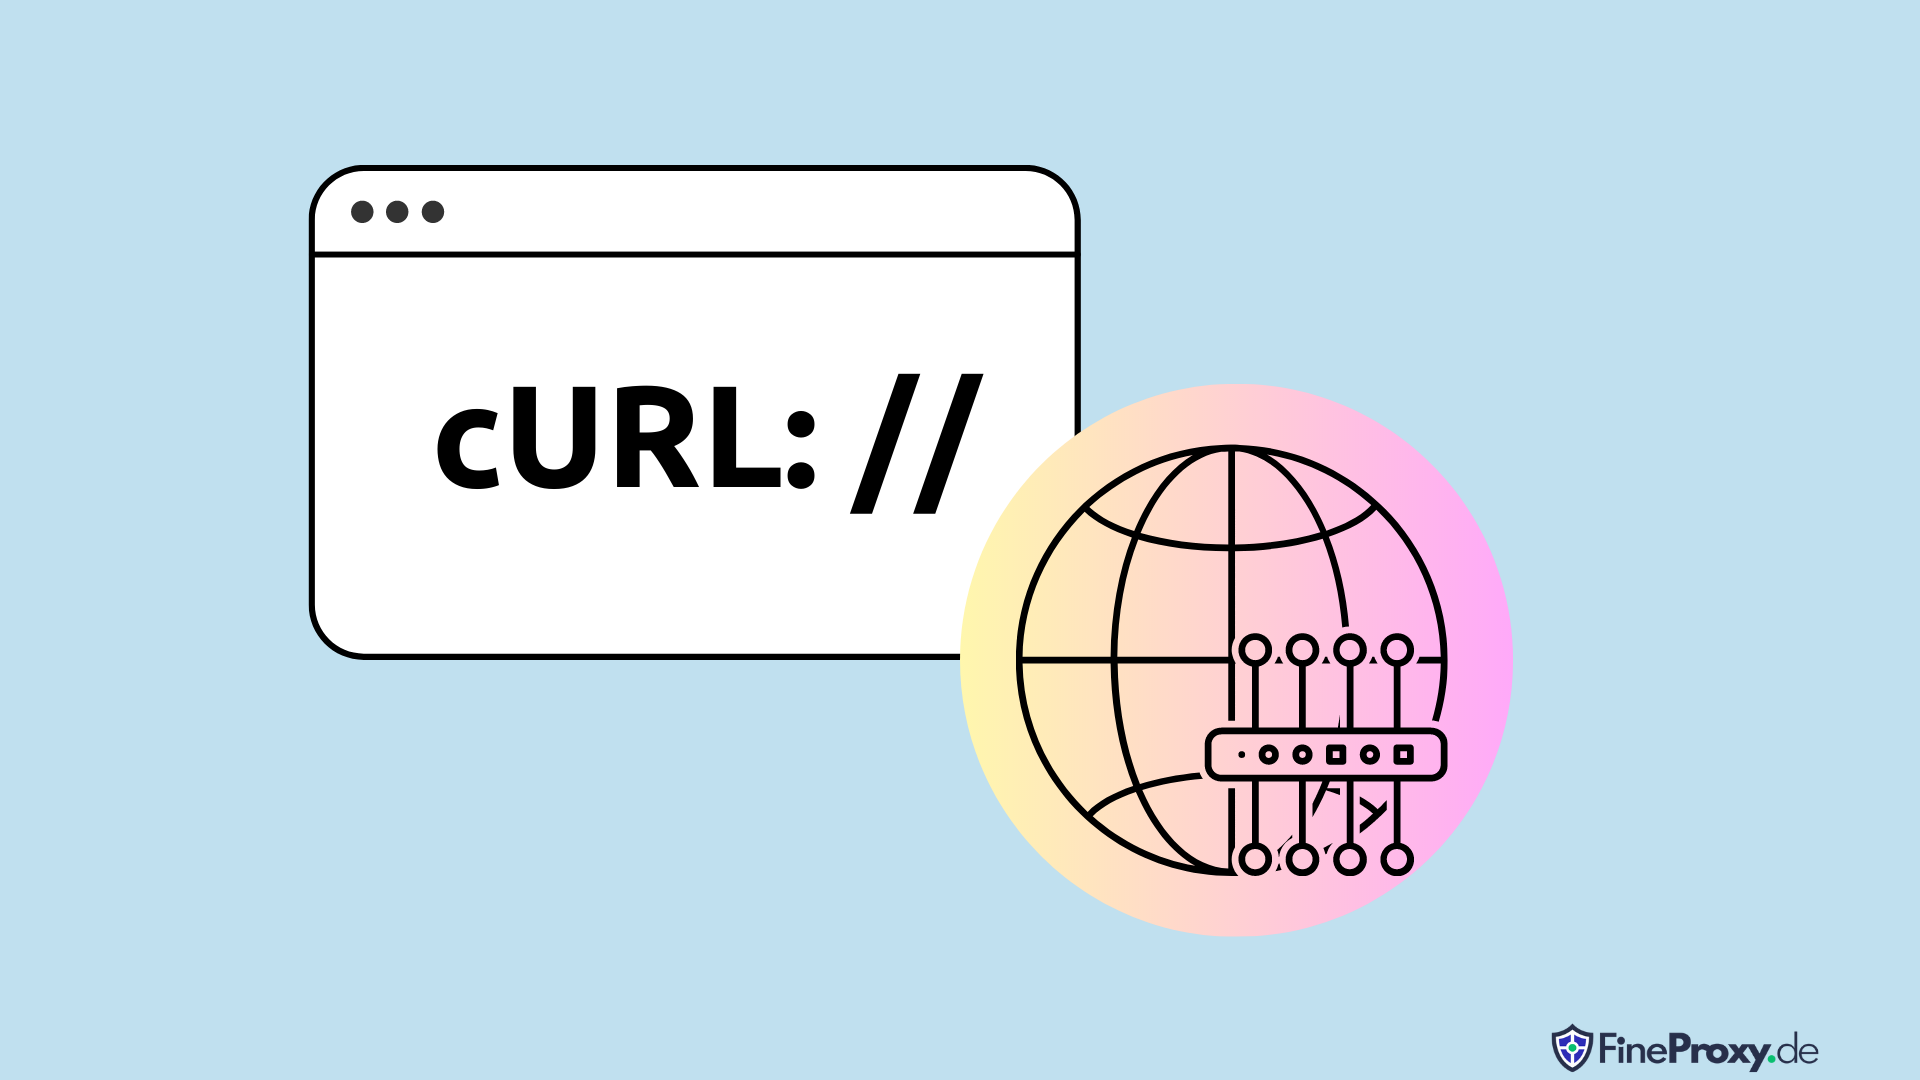 Cómo utilizar cURL con Proxy: una guía paso a paso con 7 consejos y trucos para 2023